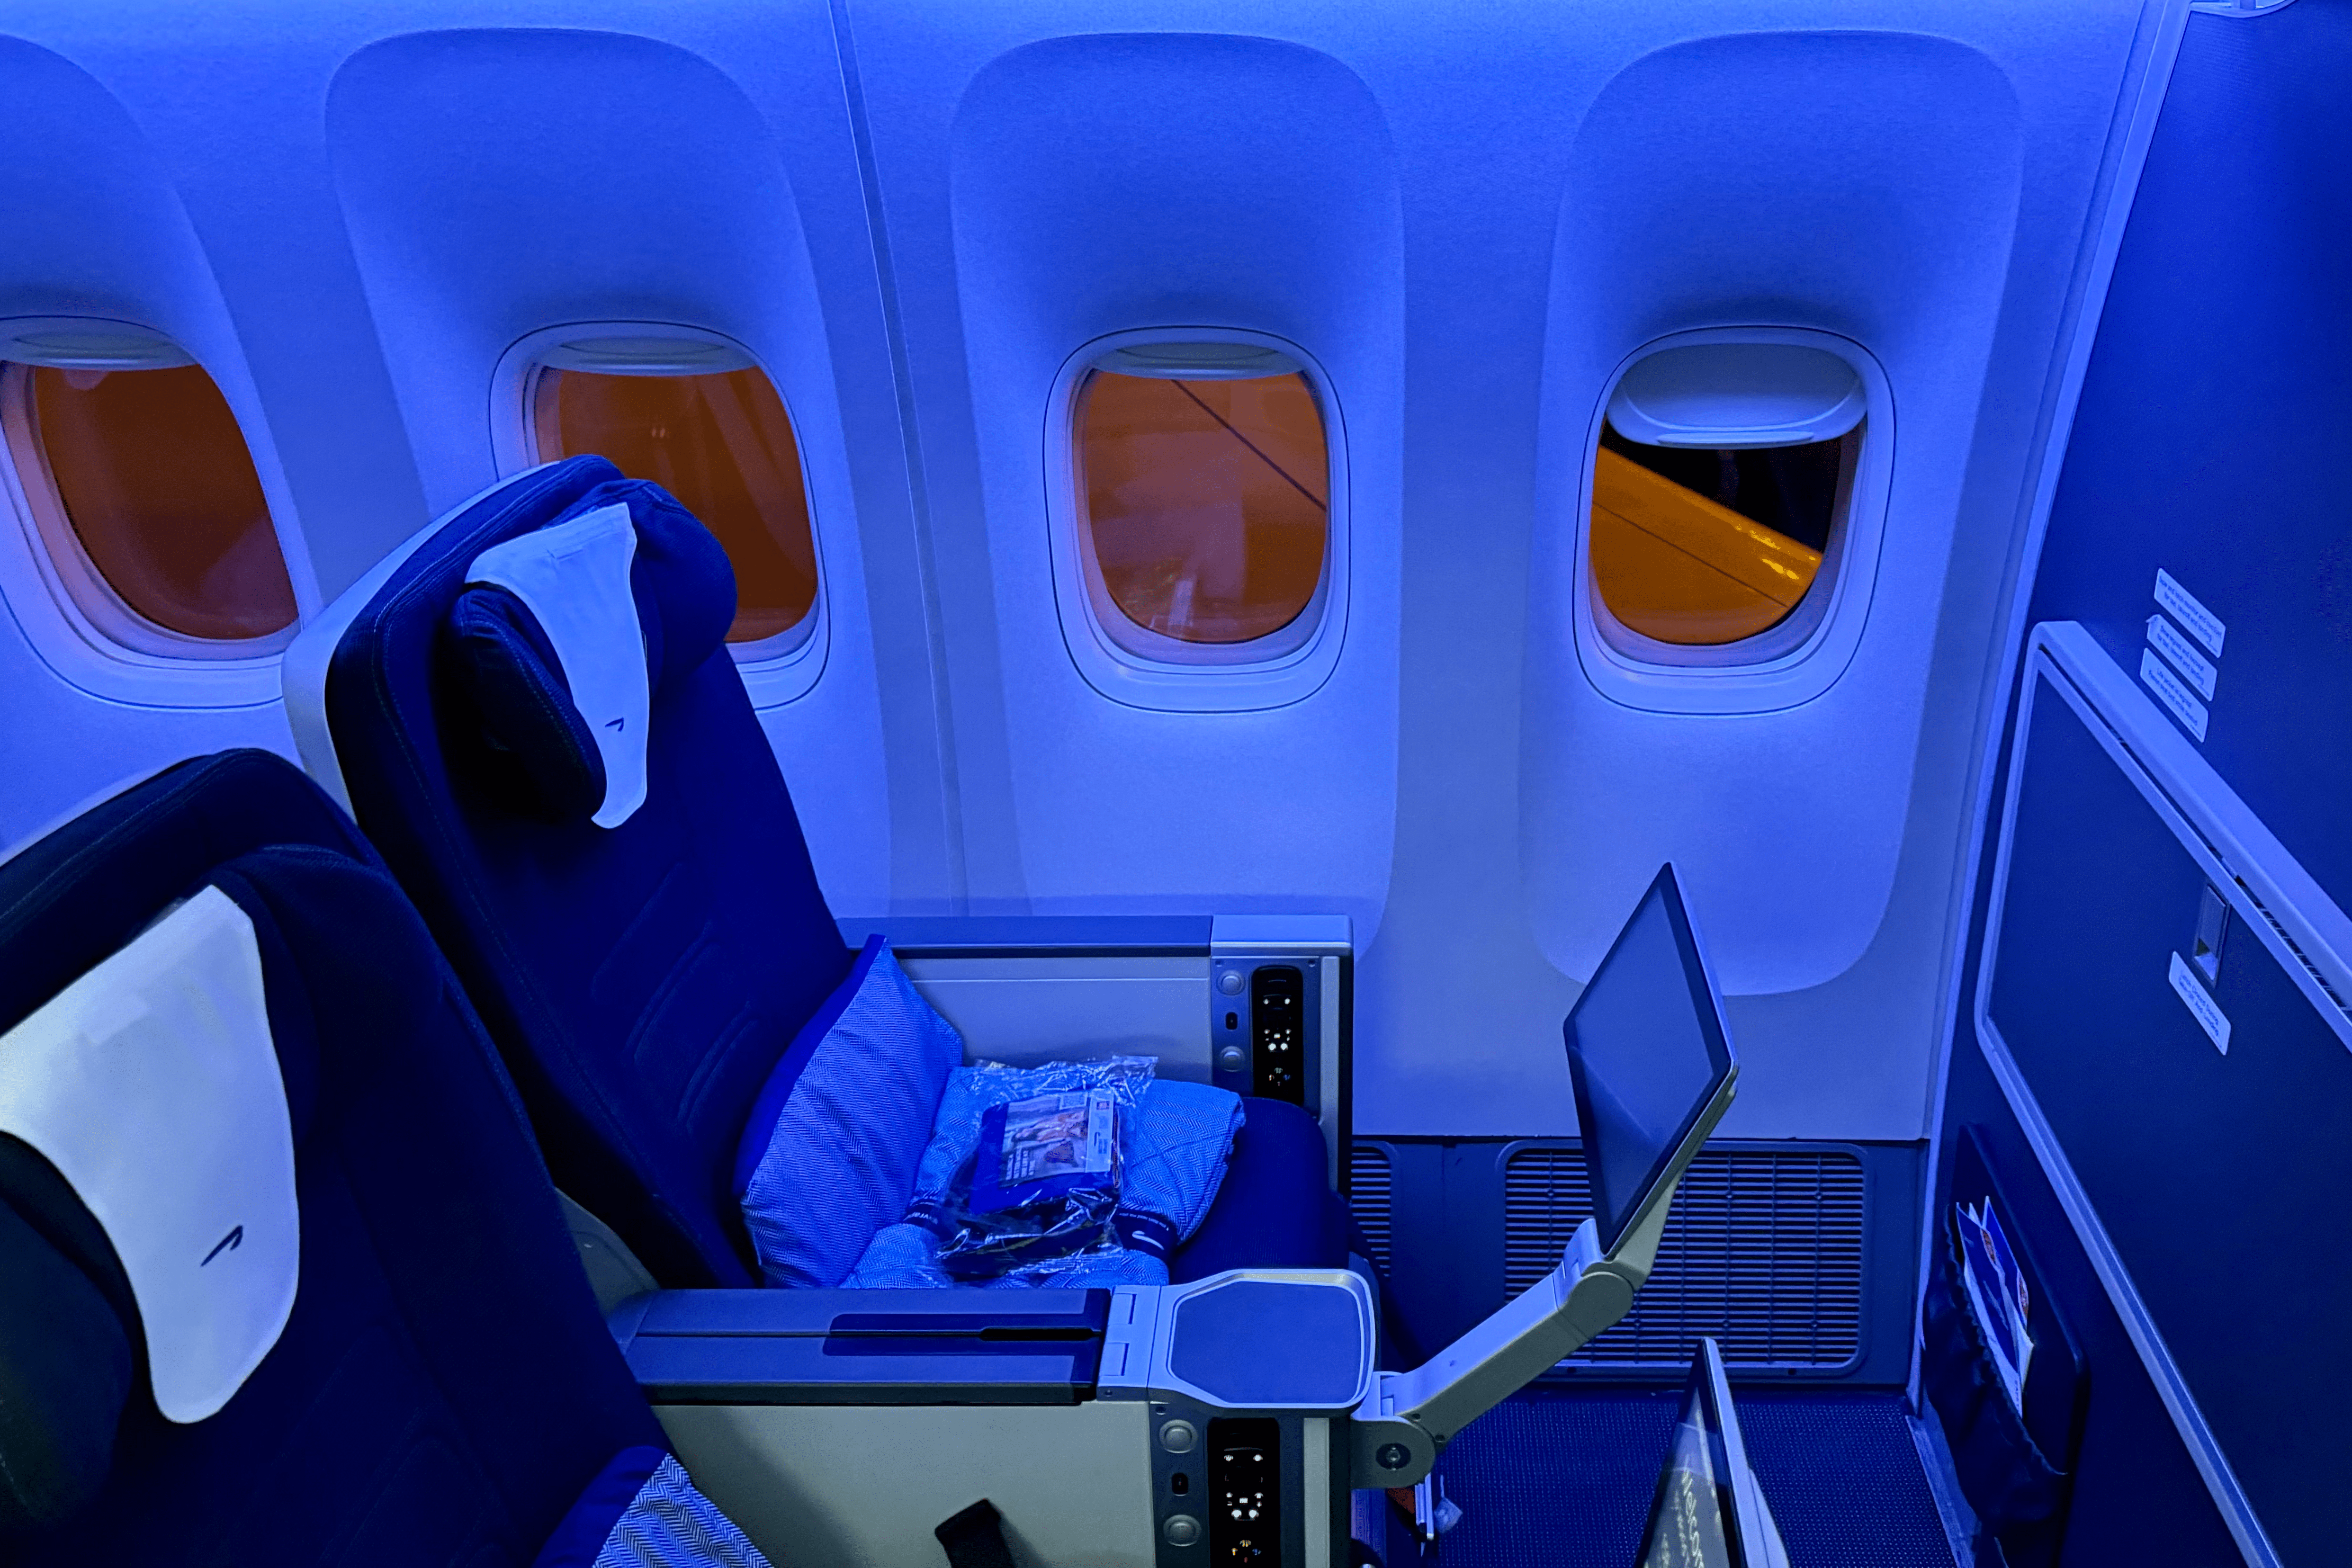 British Airways' Premium Economy cabin is known as World Traveller Plus